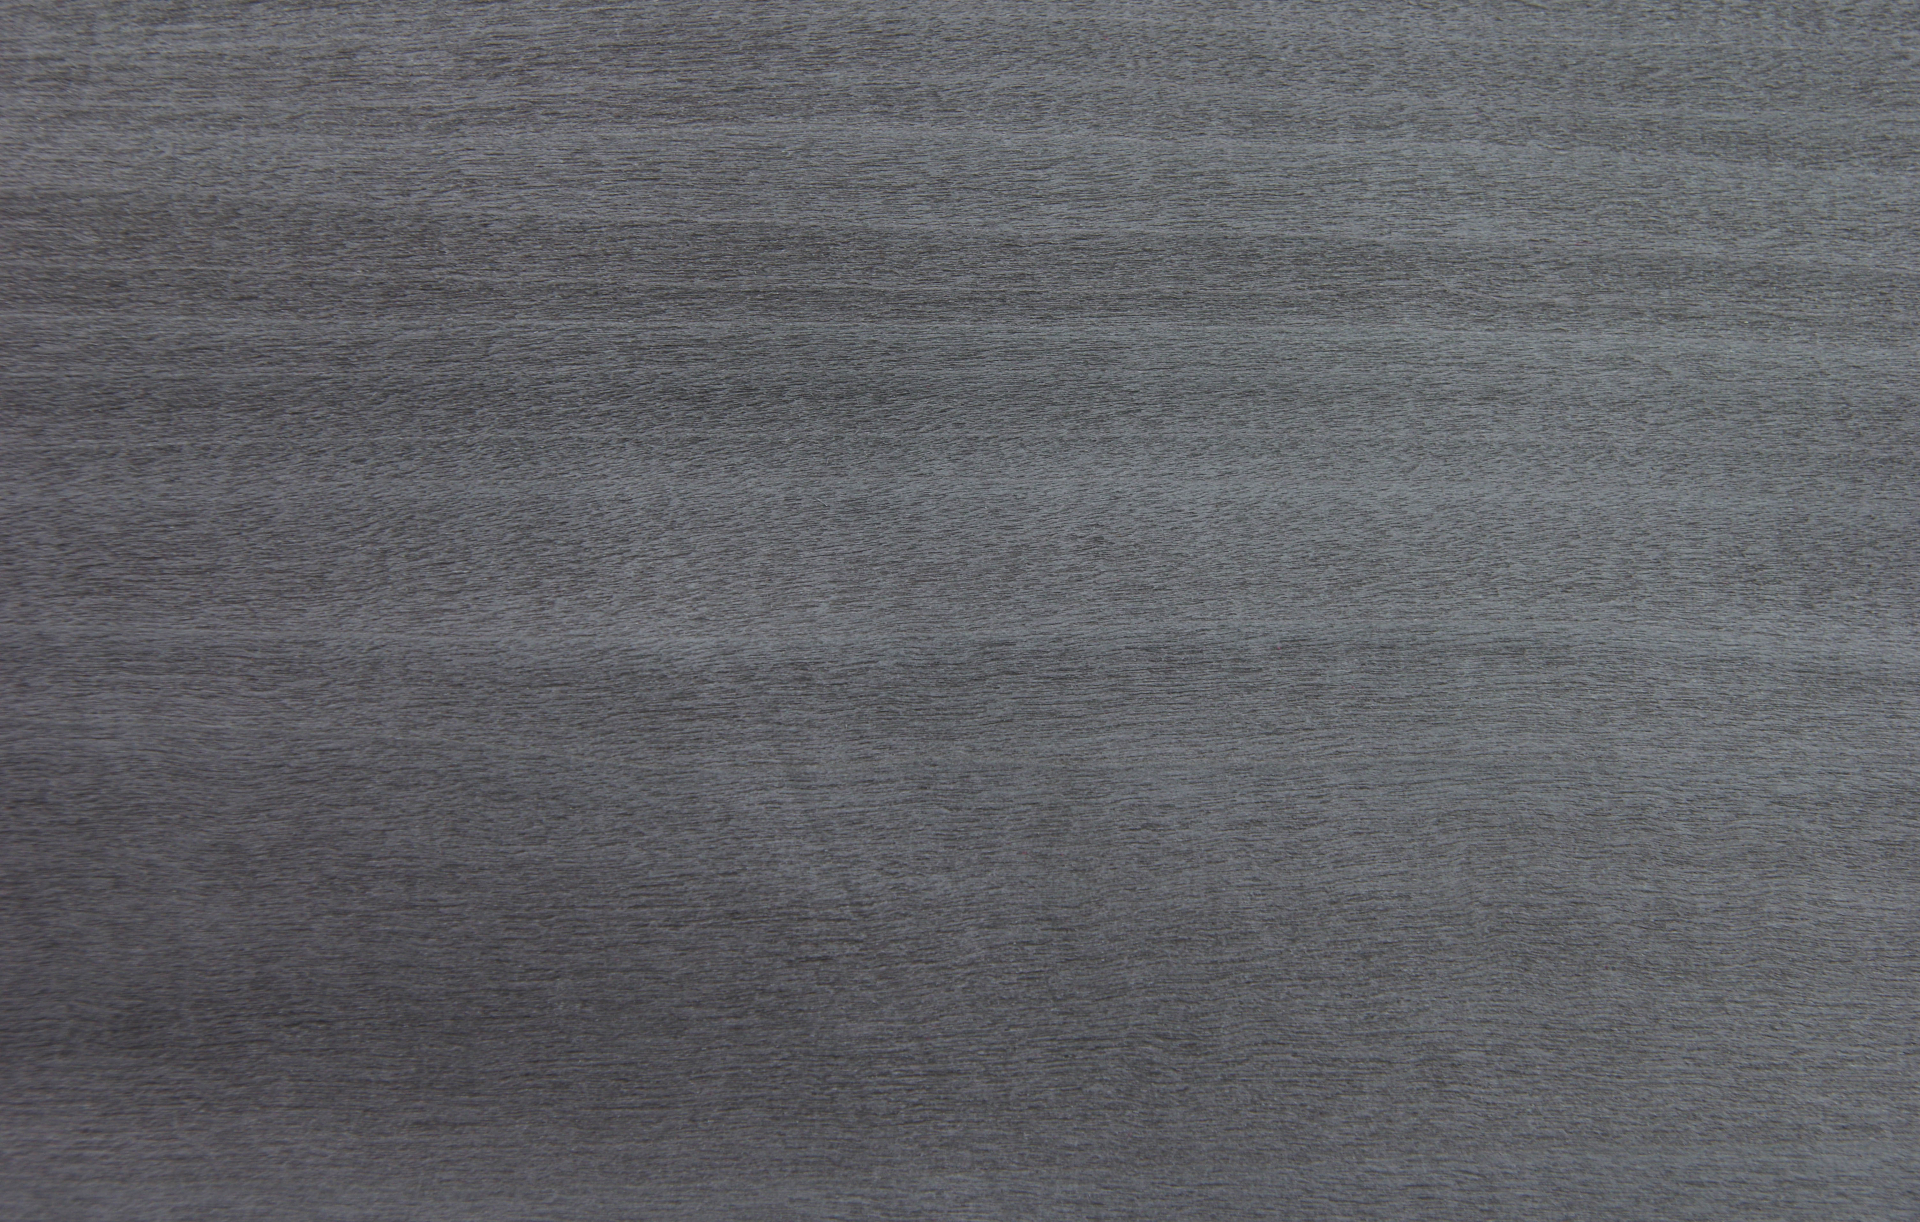 0,6mm Tulpenbaum silbergrau gefärbtes Furnier 0,51m² A 13 33 12